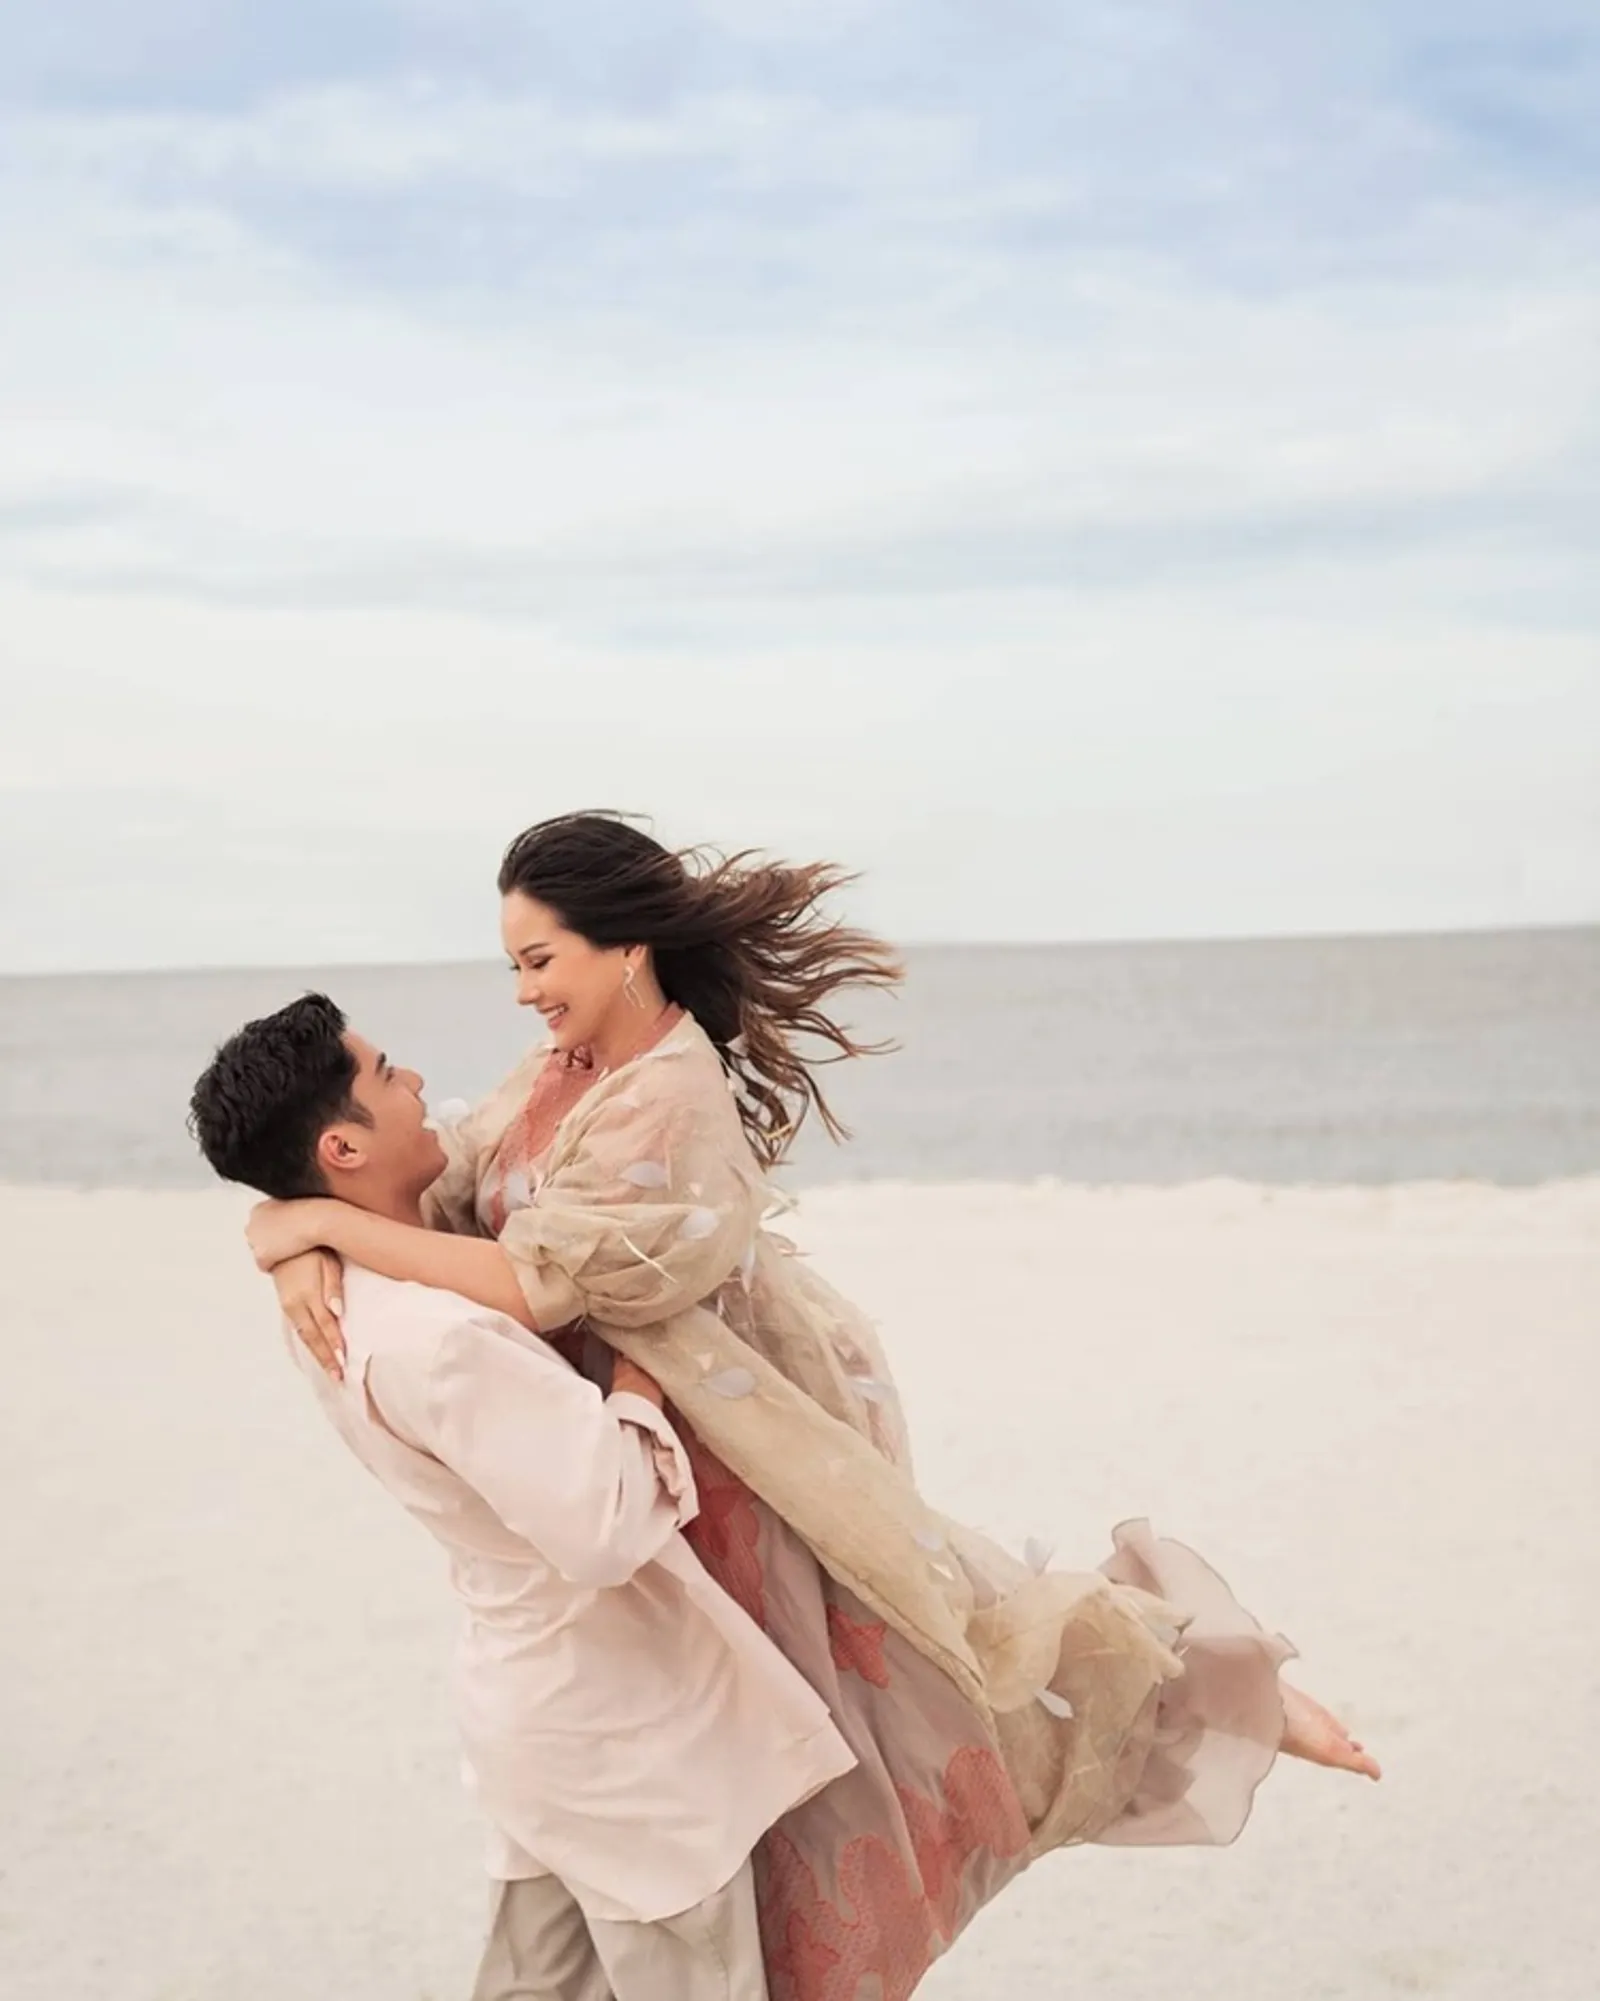 Bak Pre-Wedding, 9 Potret Mesra Al Ghazali & Alyssa Daguise di Pantai